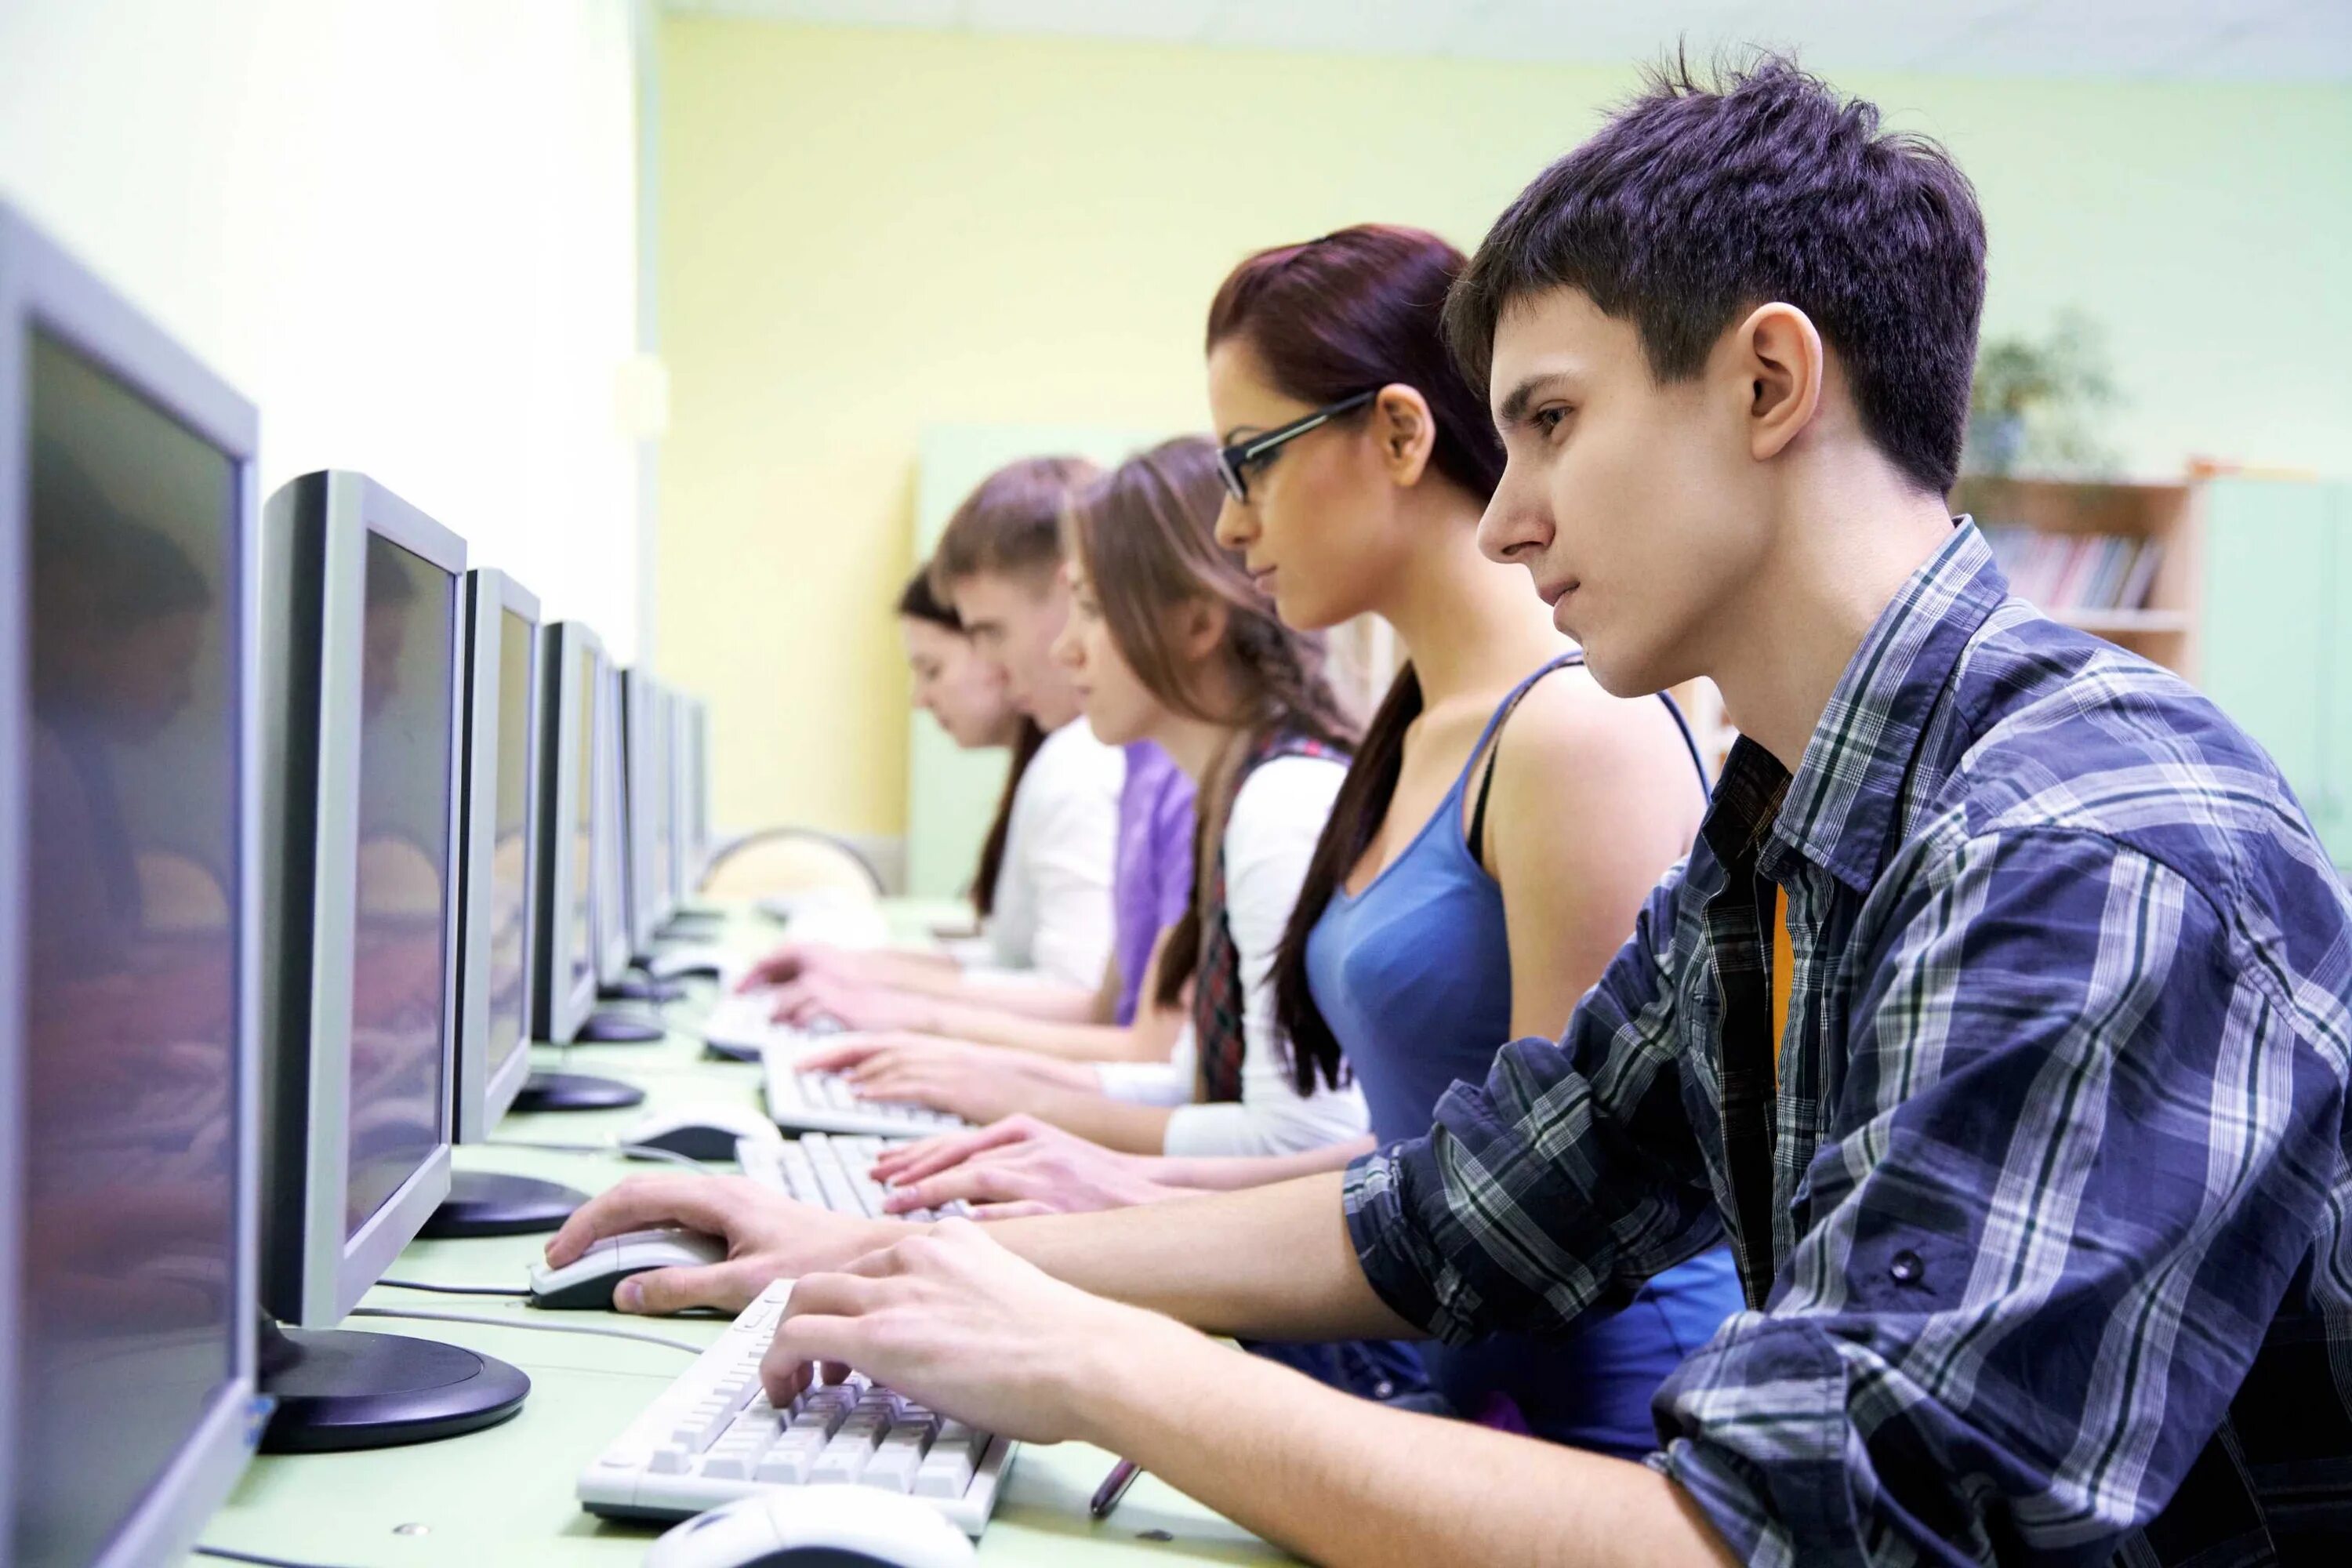 Test computer. Подросток за компьютером. Студент с компьютером. Современный подросток за компьютером. Старшеклассник за компьютером.